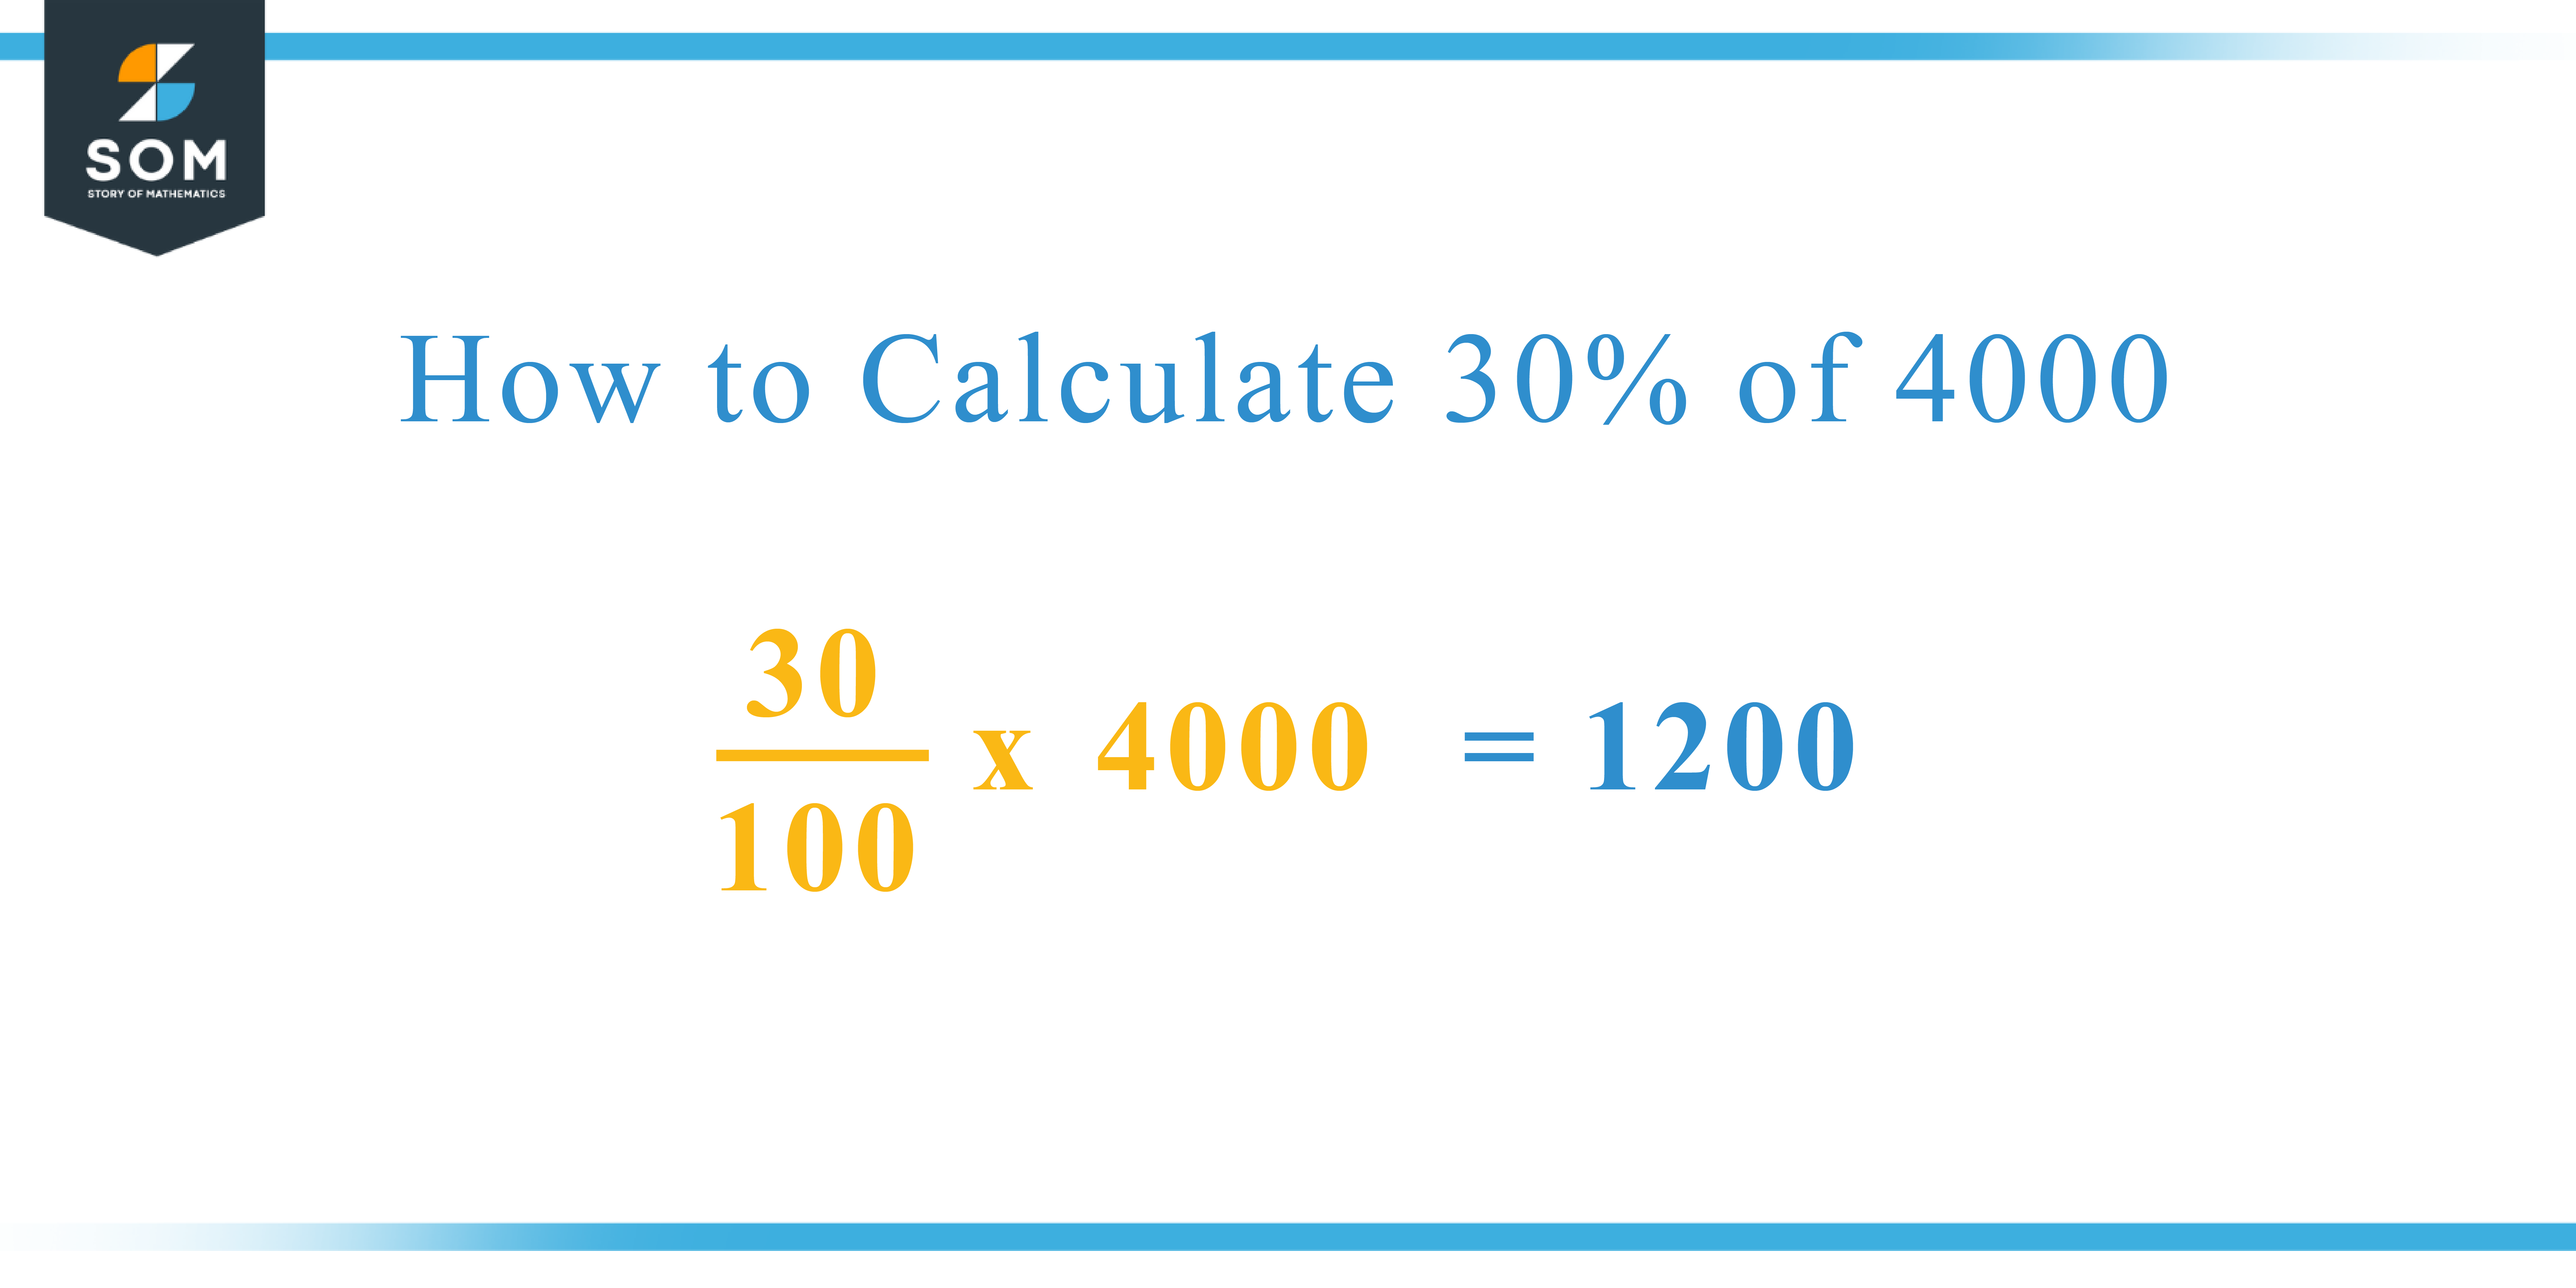 Calculation 30 percent of 4000